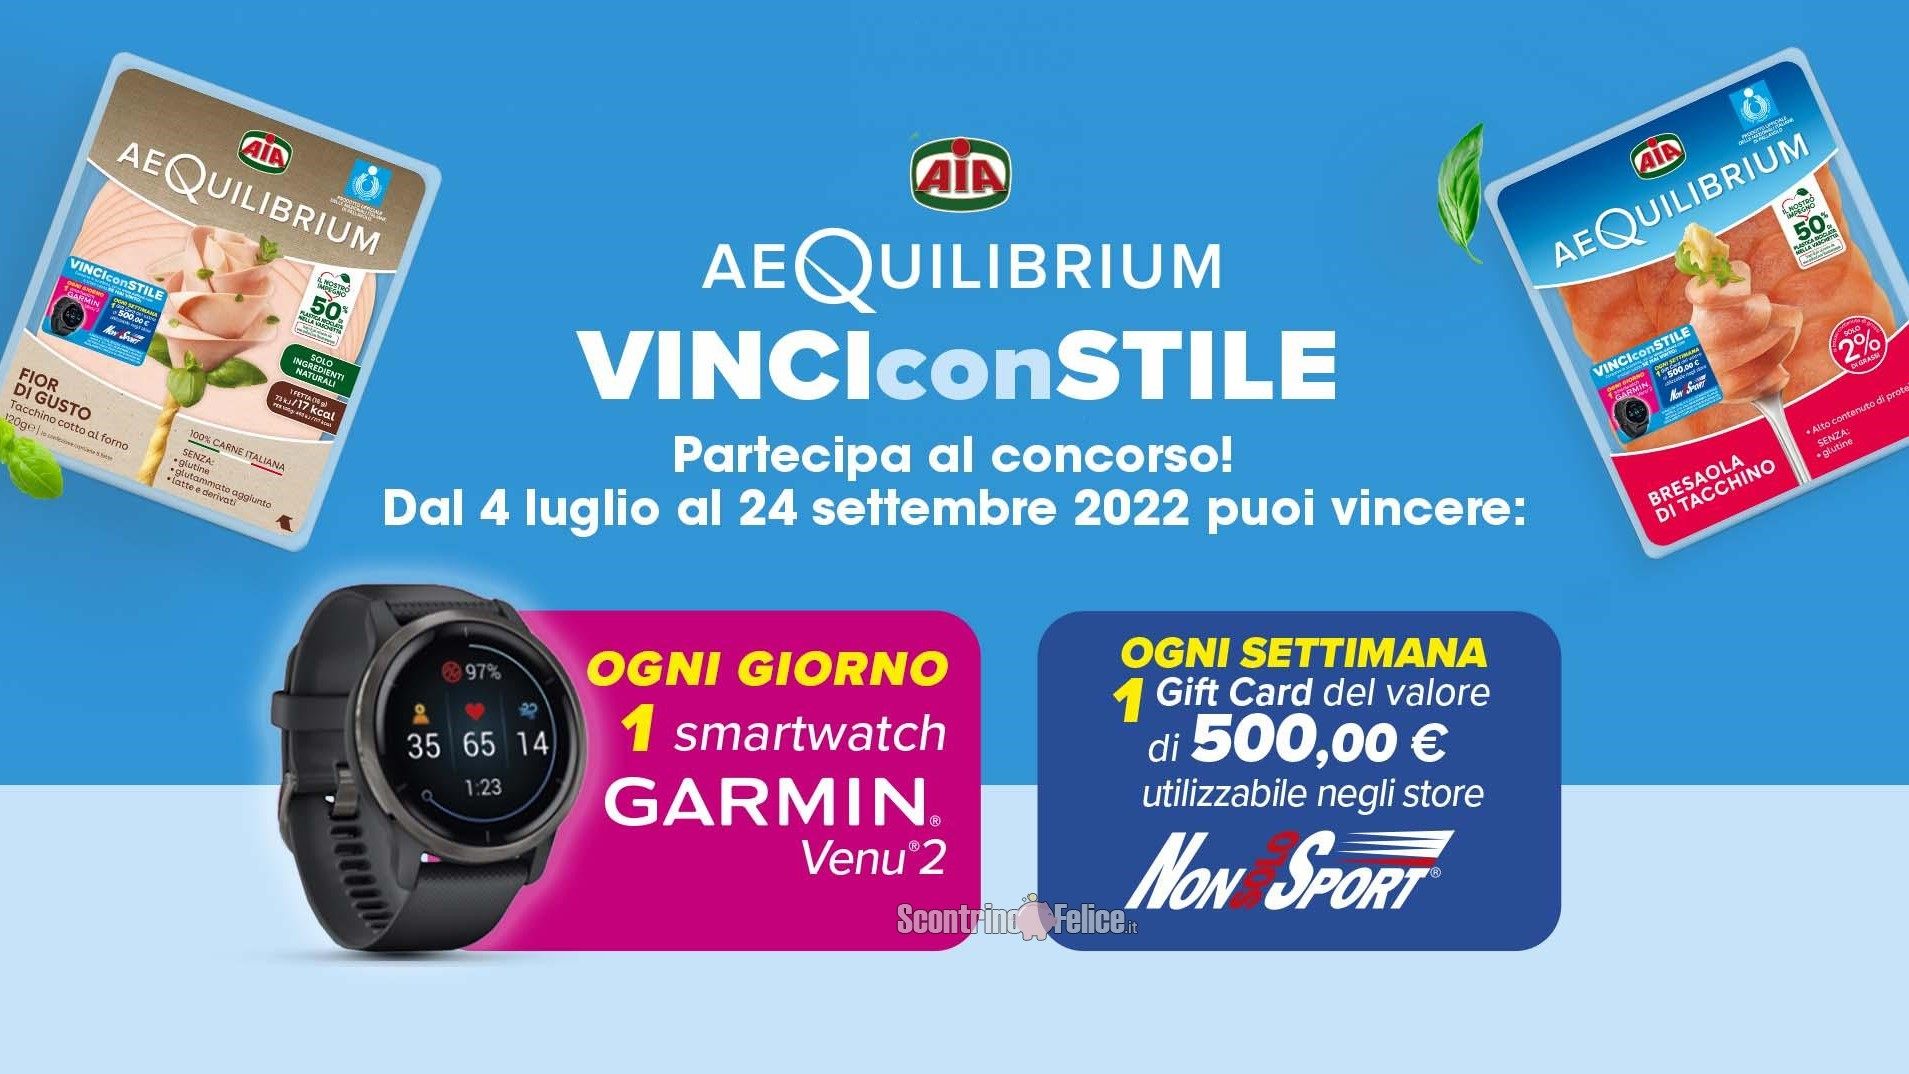 Concorso Aia AeQuilibirum "Vinci Con Stile": in palio smartwatch Garmin Venu 2 e gift card NonSoloSport da 500 euro